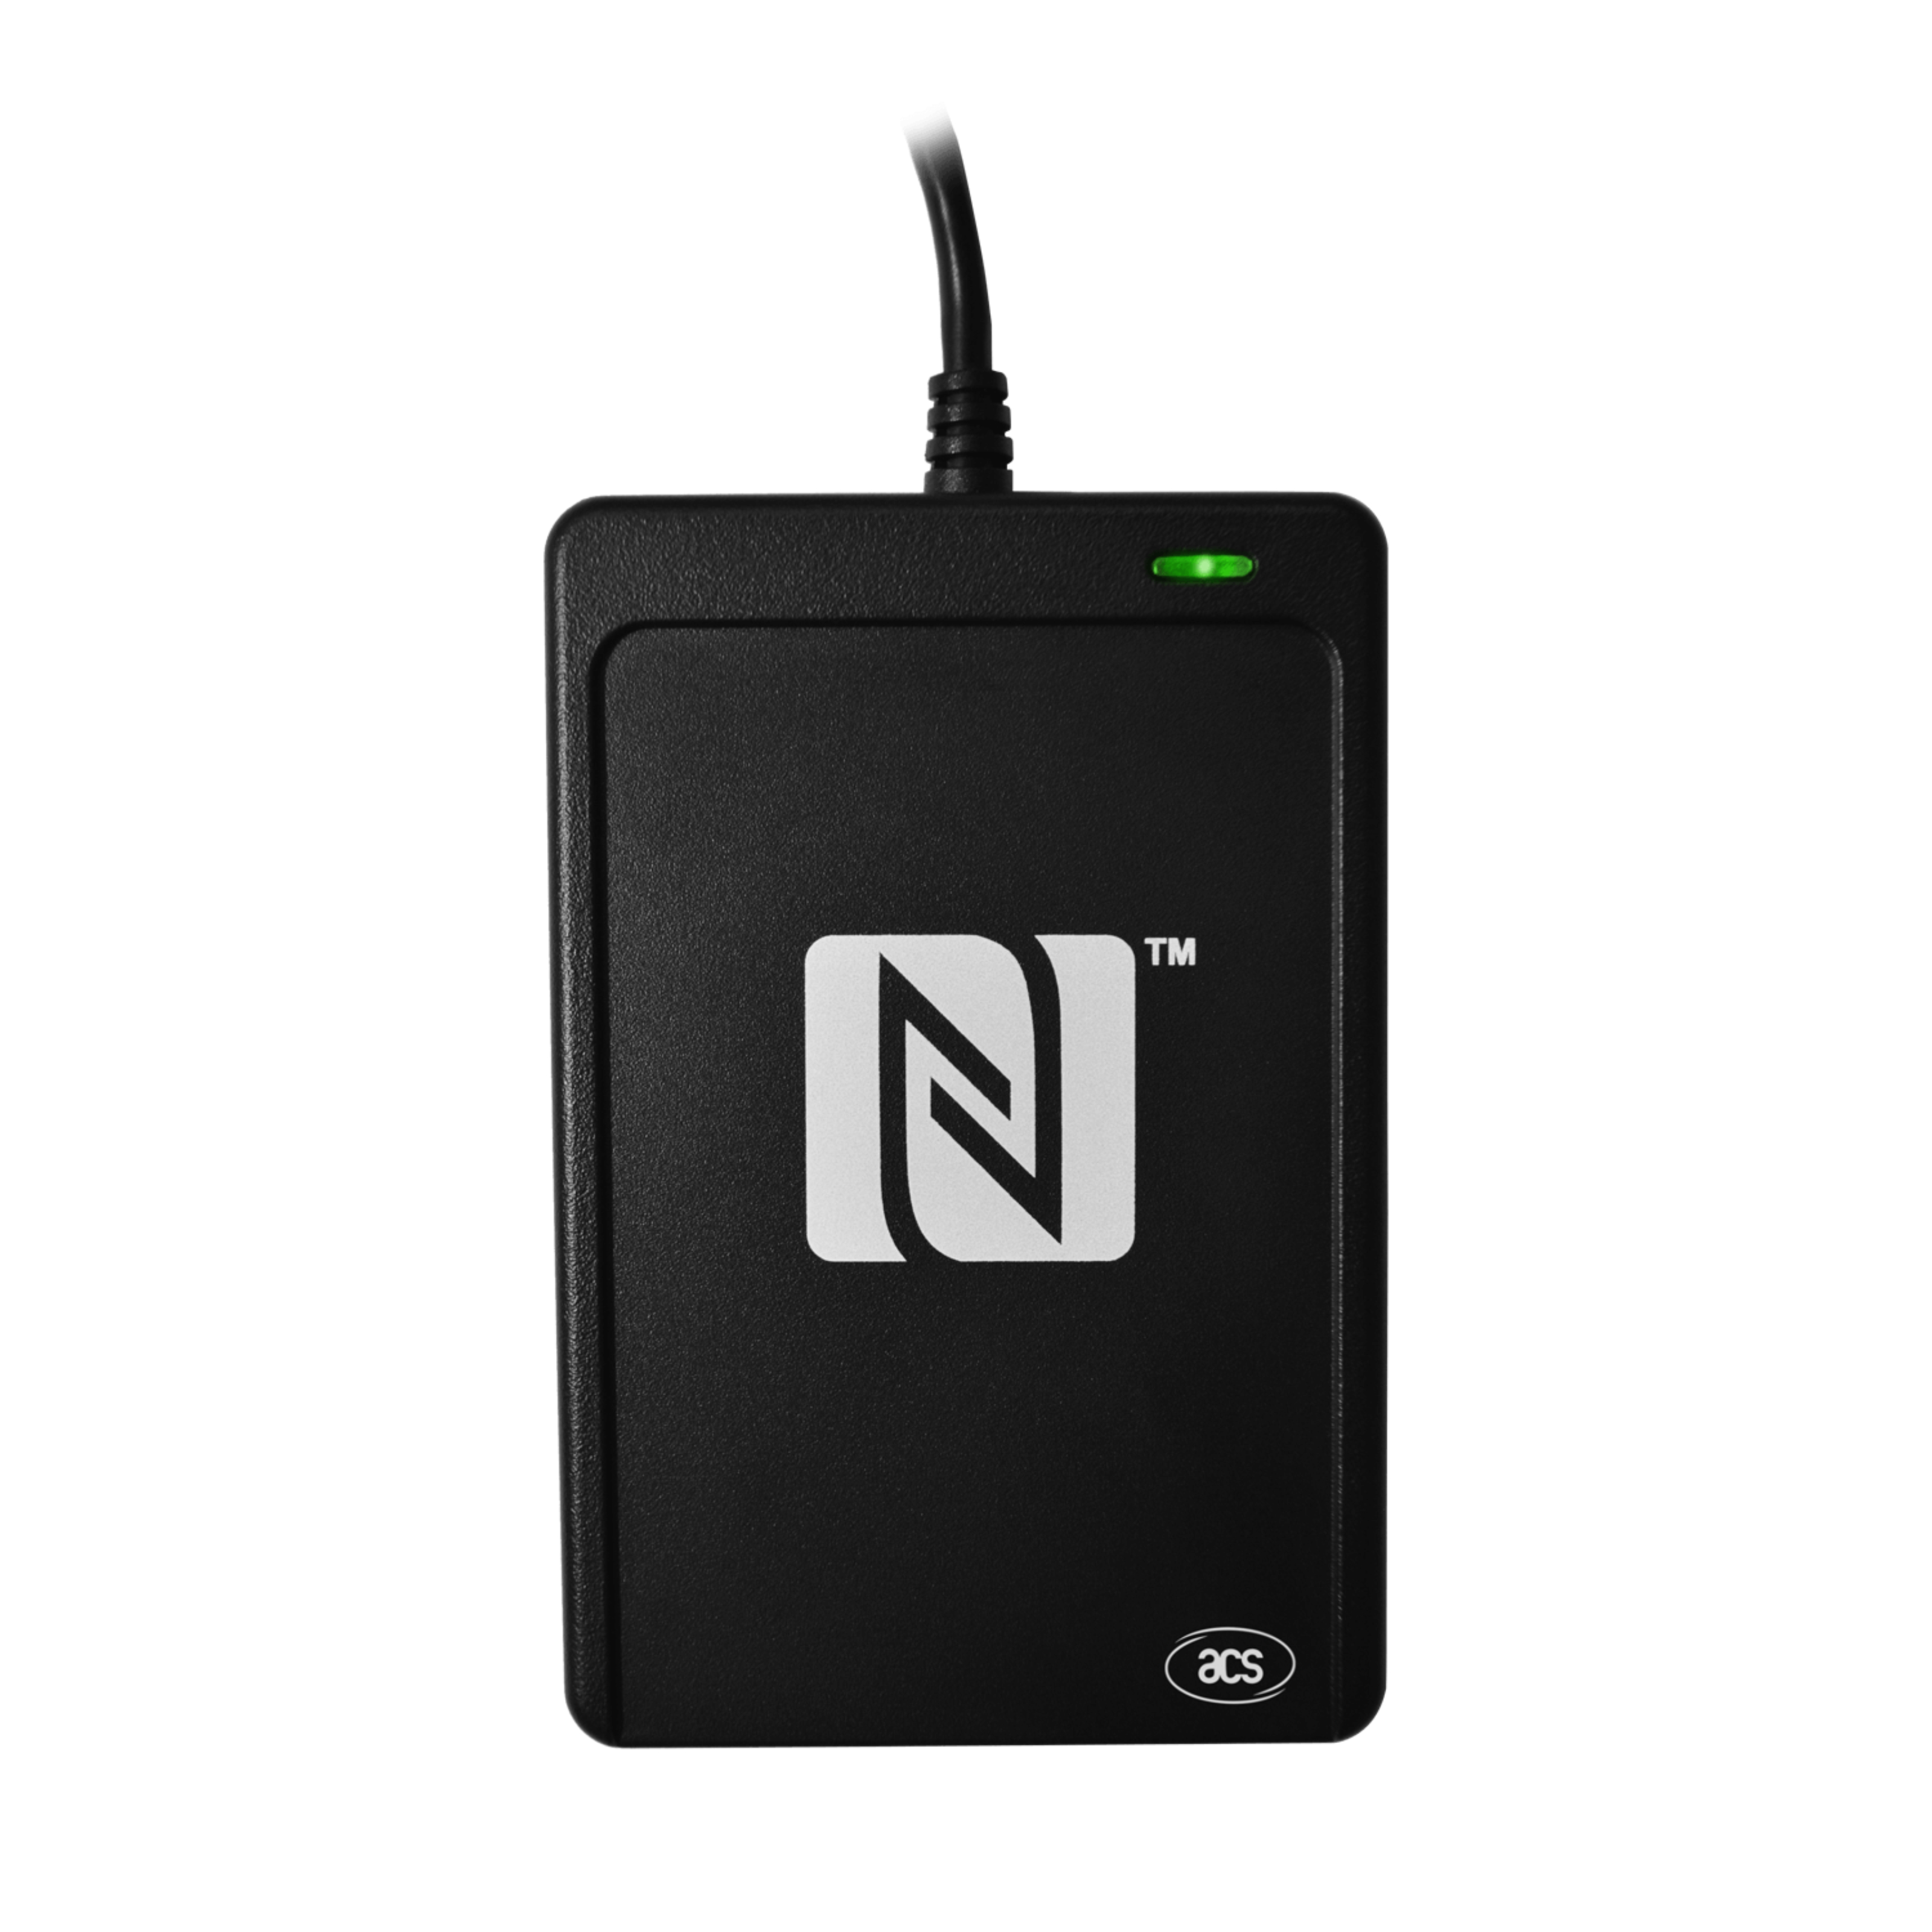 Vorderseite des NFC Reader in schwarz  mit aufgedrucktem NFC Logo